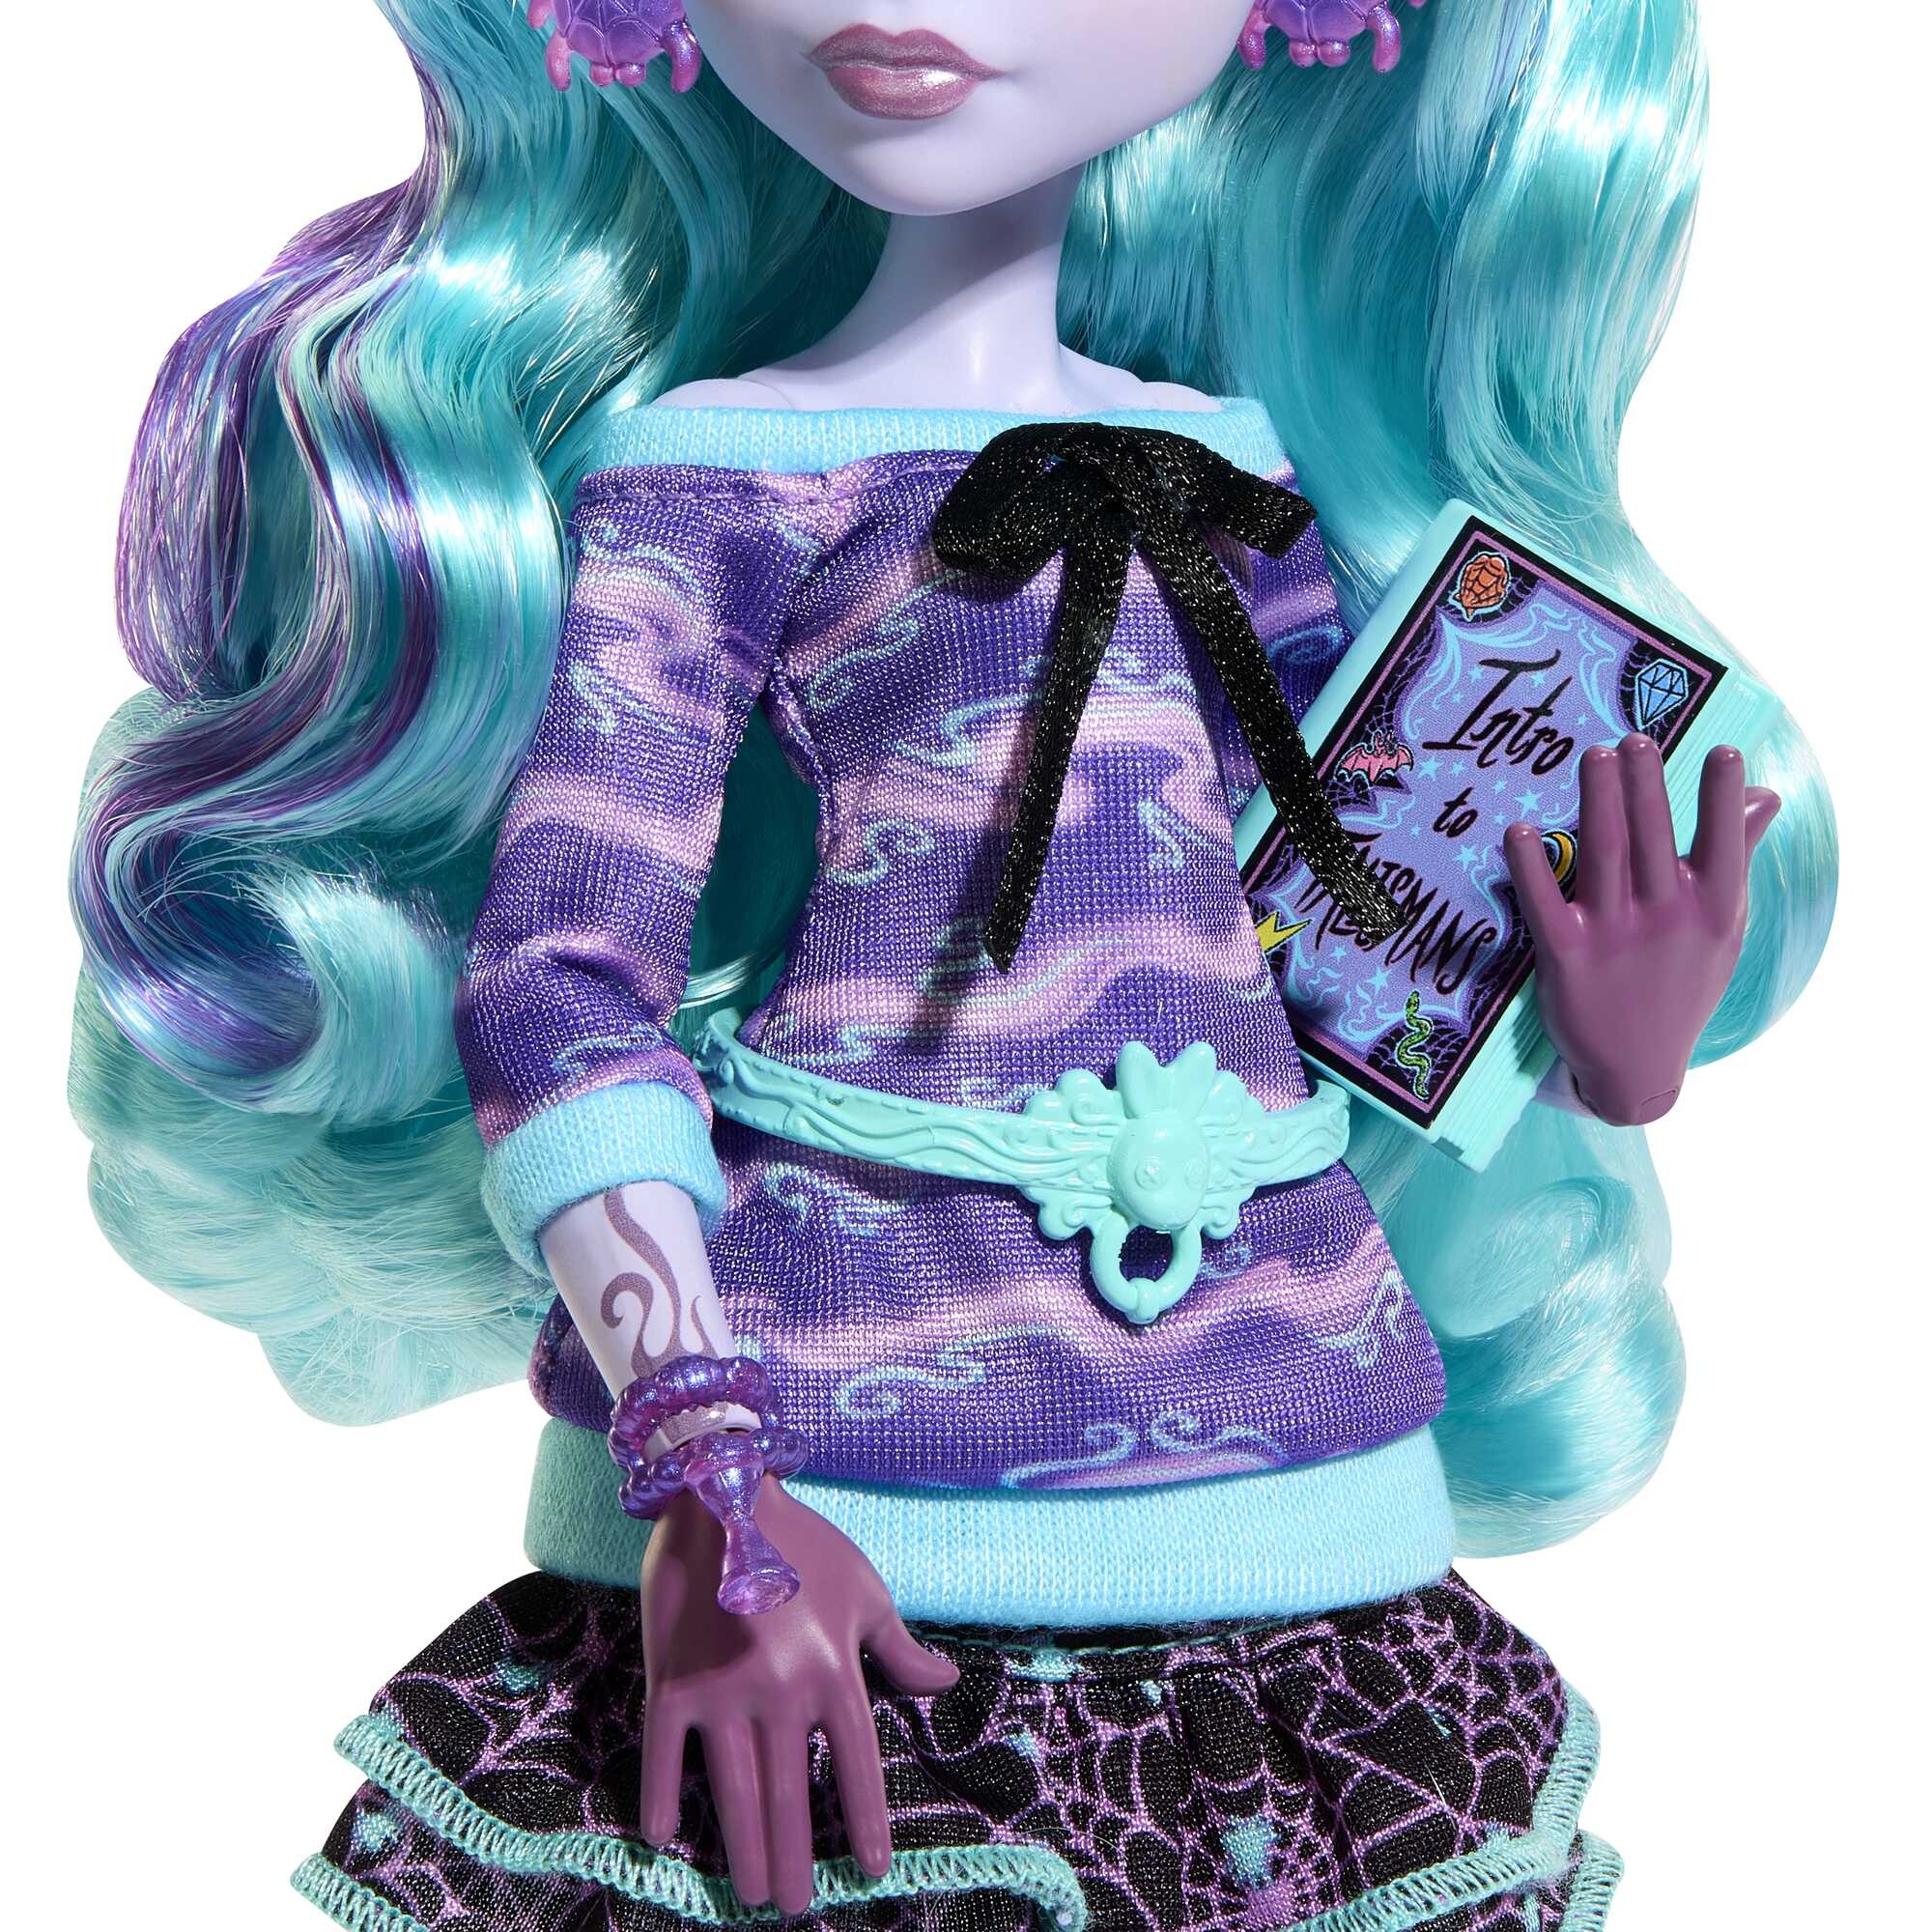 Monster high - twyla creepover party, bambola con outifit dettagliato e accessori per il pigiama party, cucciolo coniglietto dustin incluso - Monster High